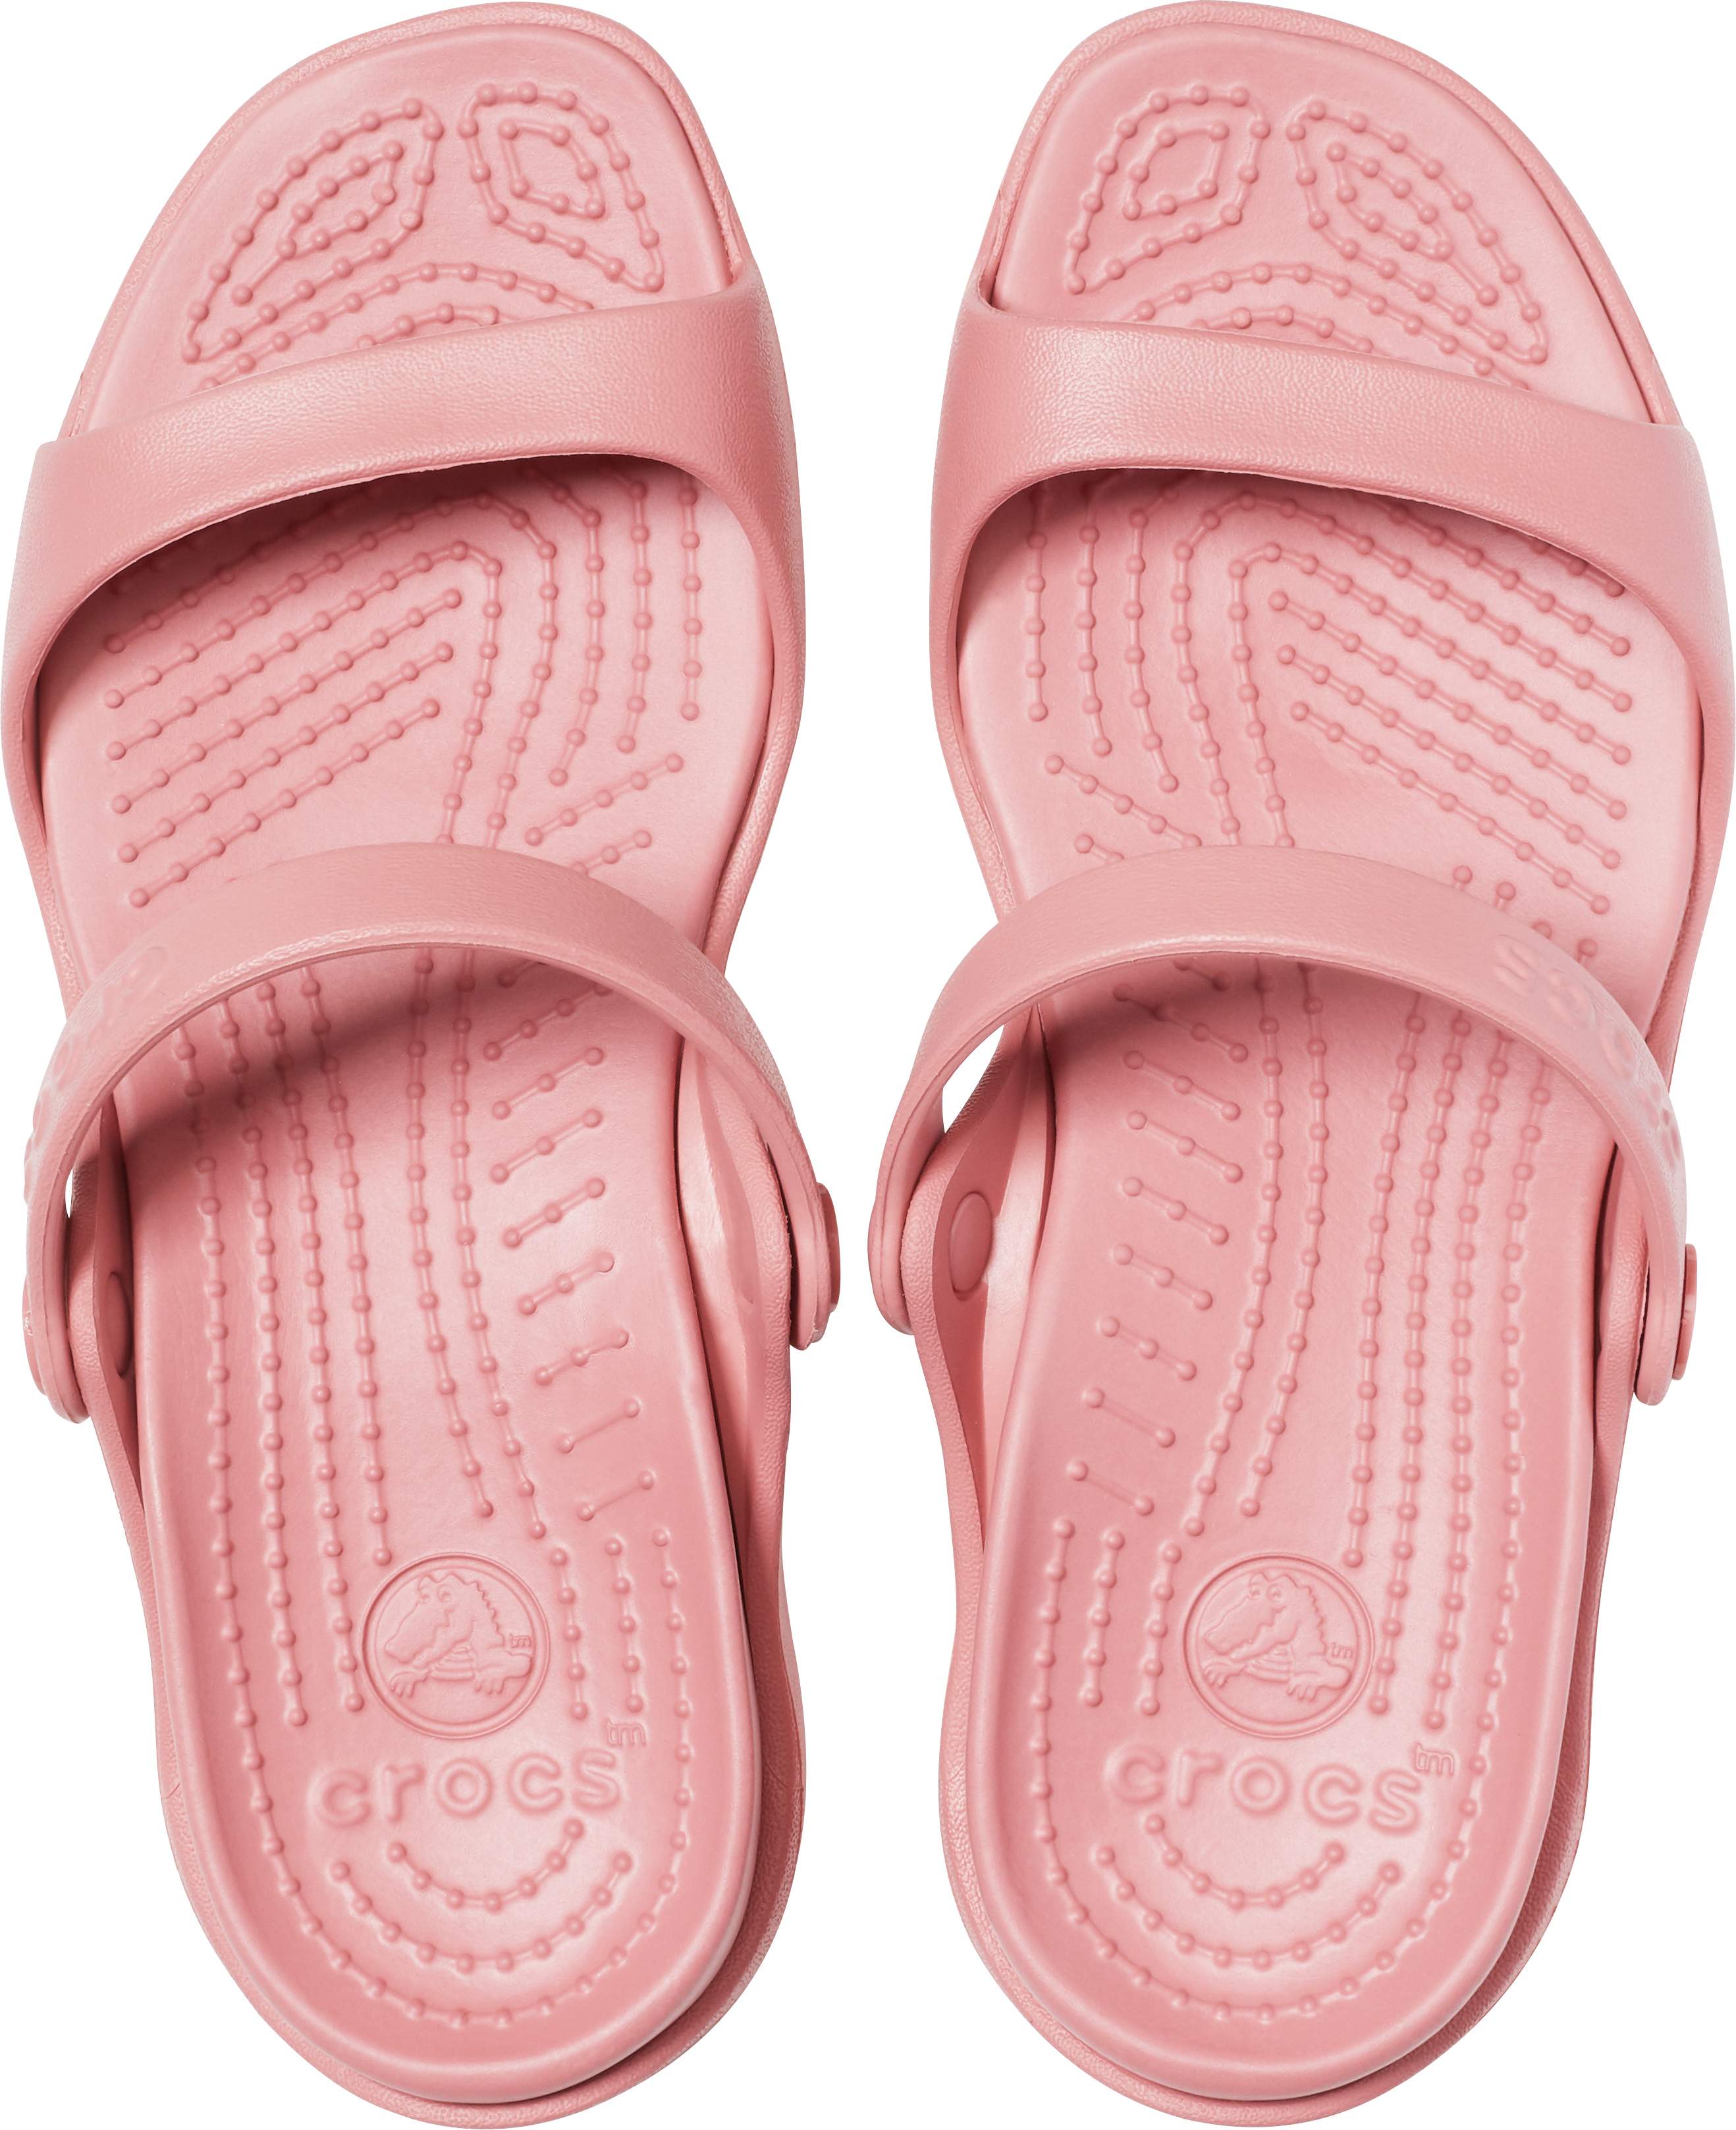 crocs cleo sandals